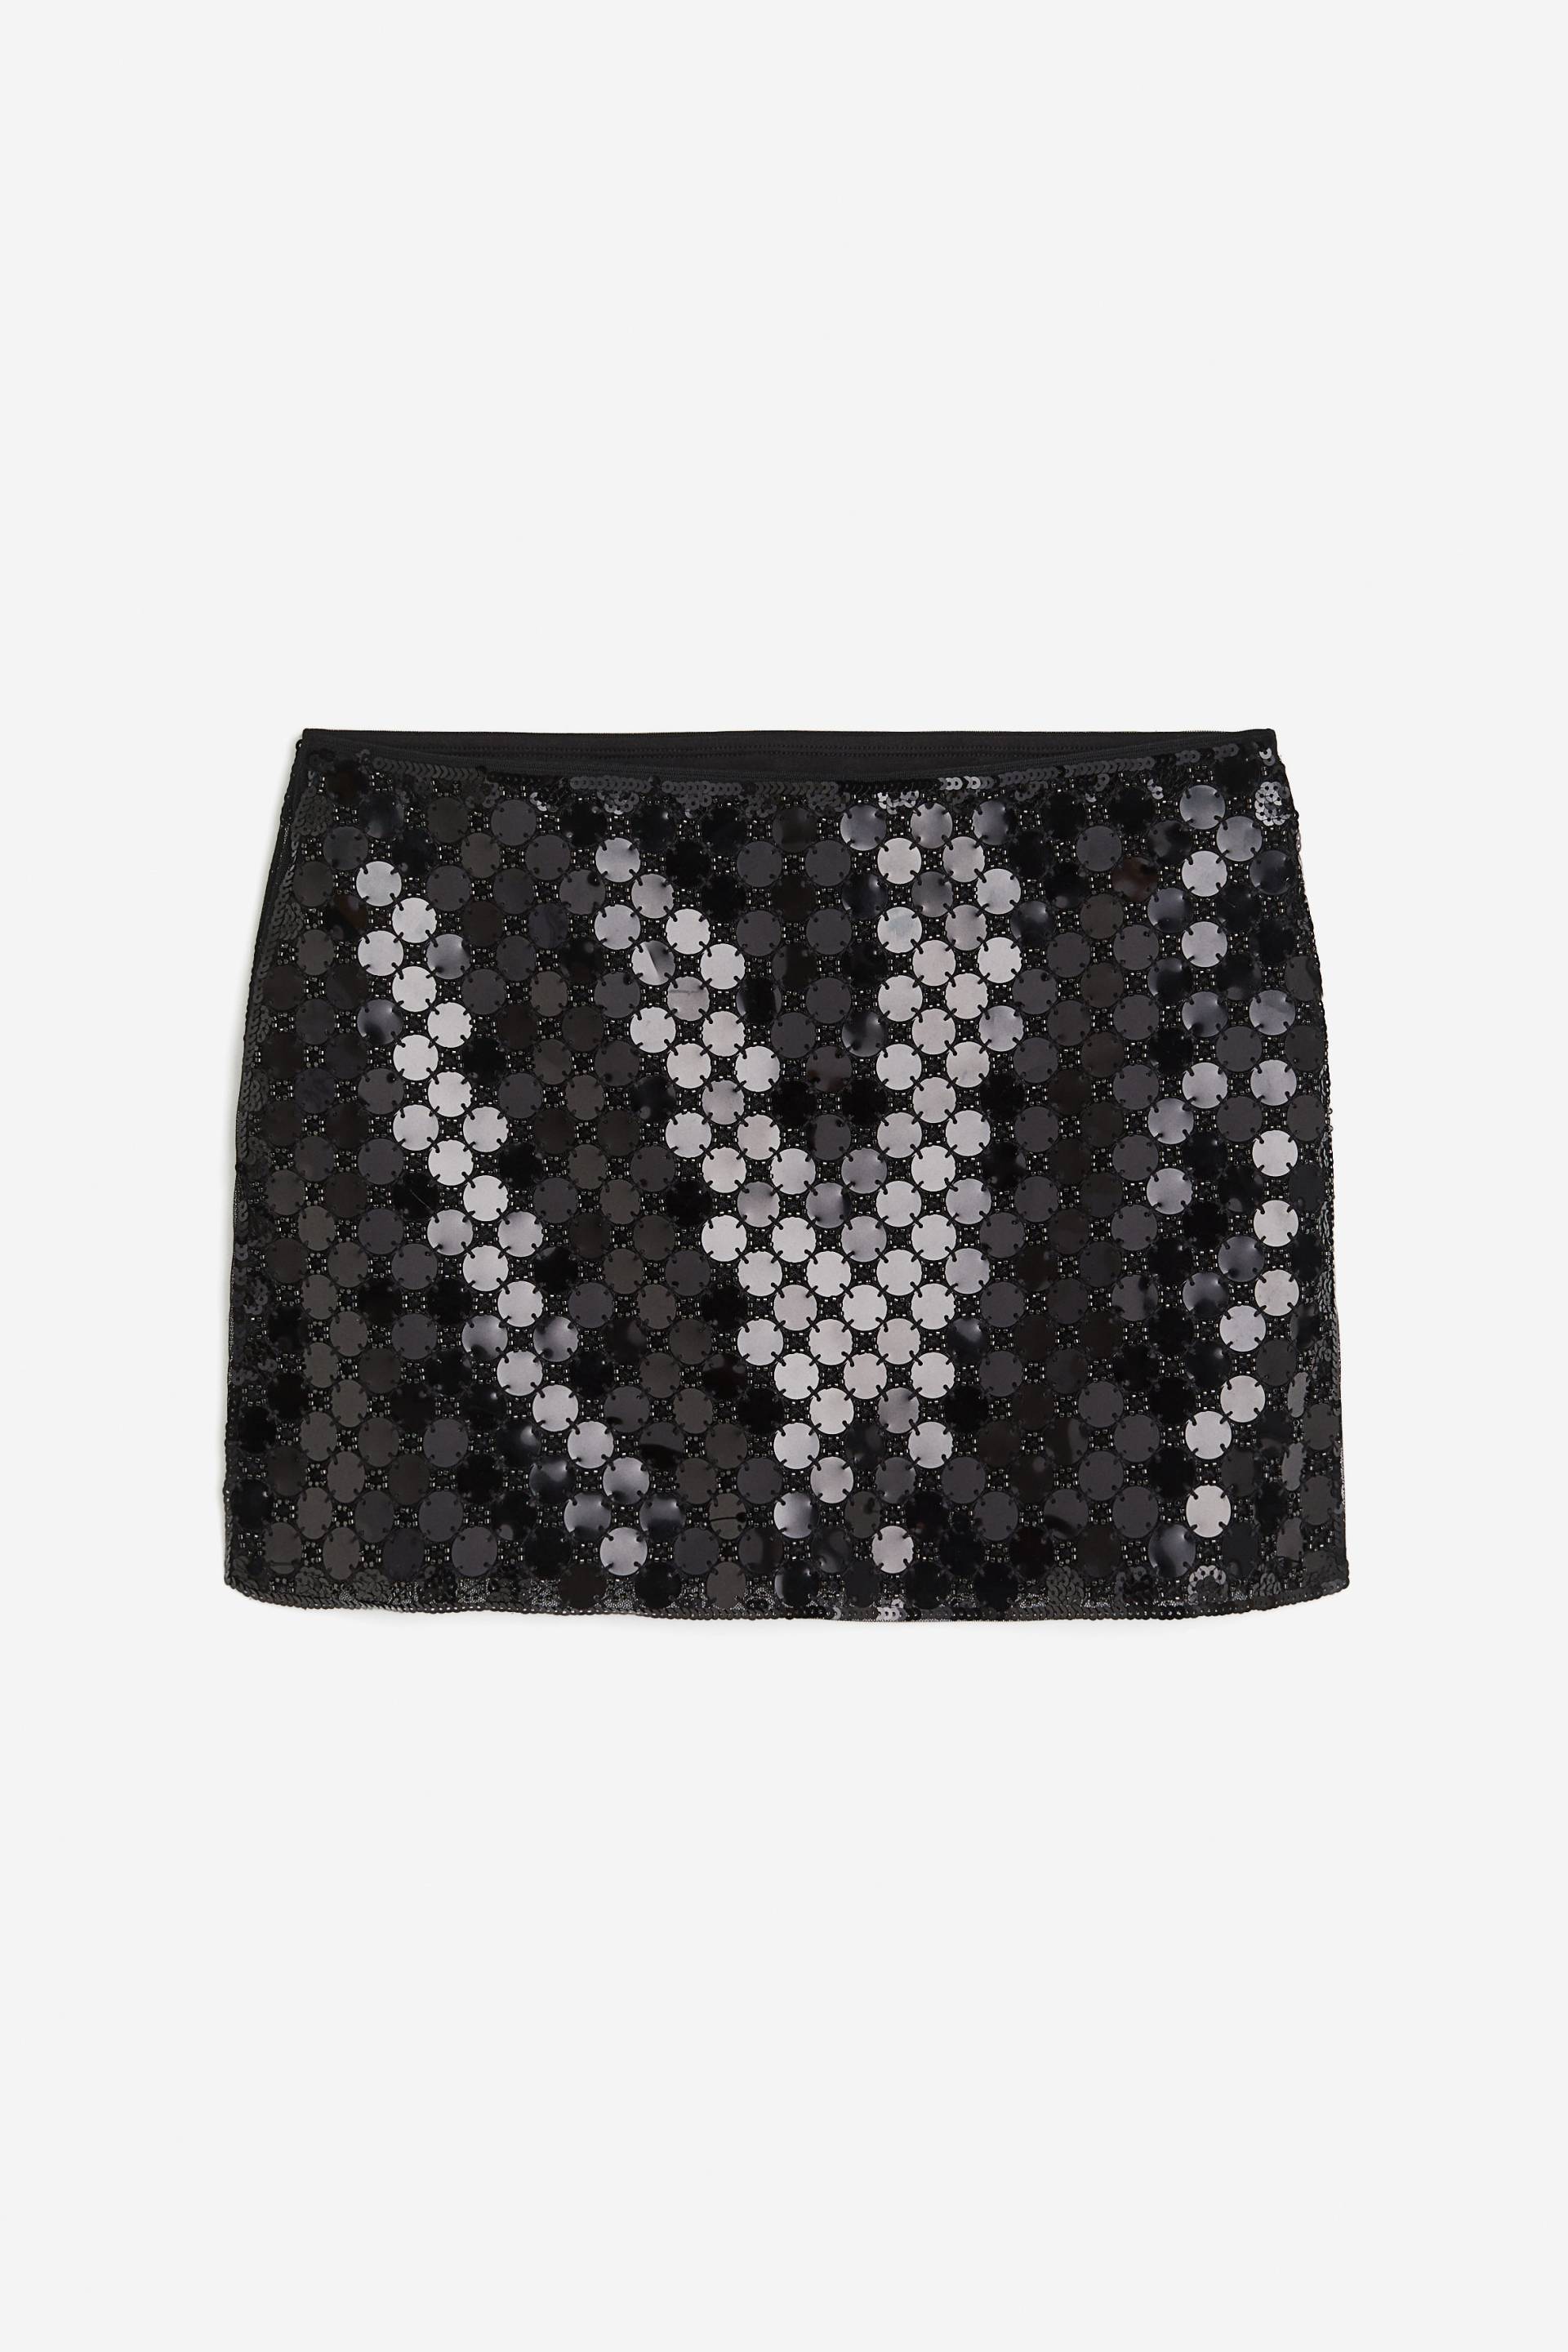 H&M Minirock mit Pailletten Schwarz, Röcke in Größe XXL. Farbe: Black von H&M